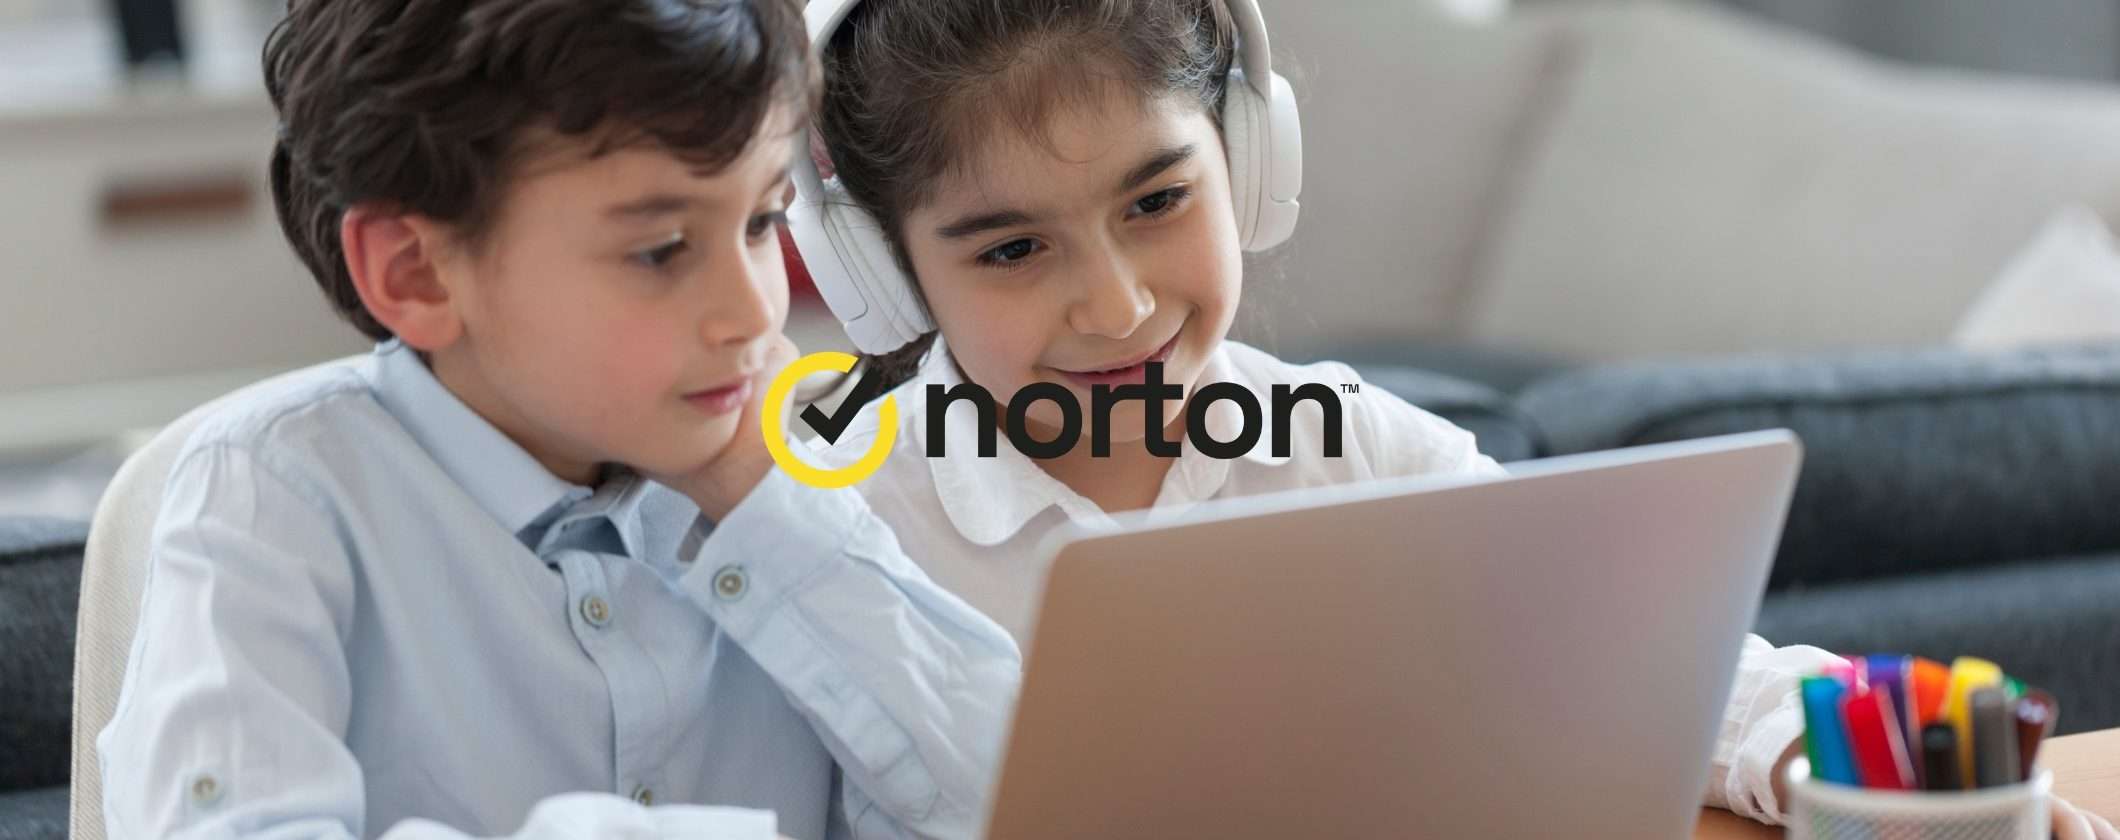 Norton Antivirus al 70%: proteggi i tuoi device